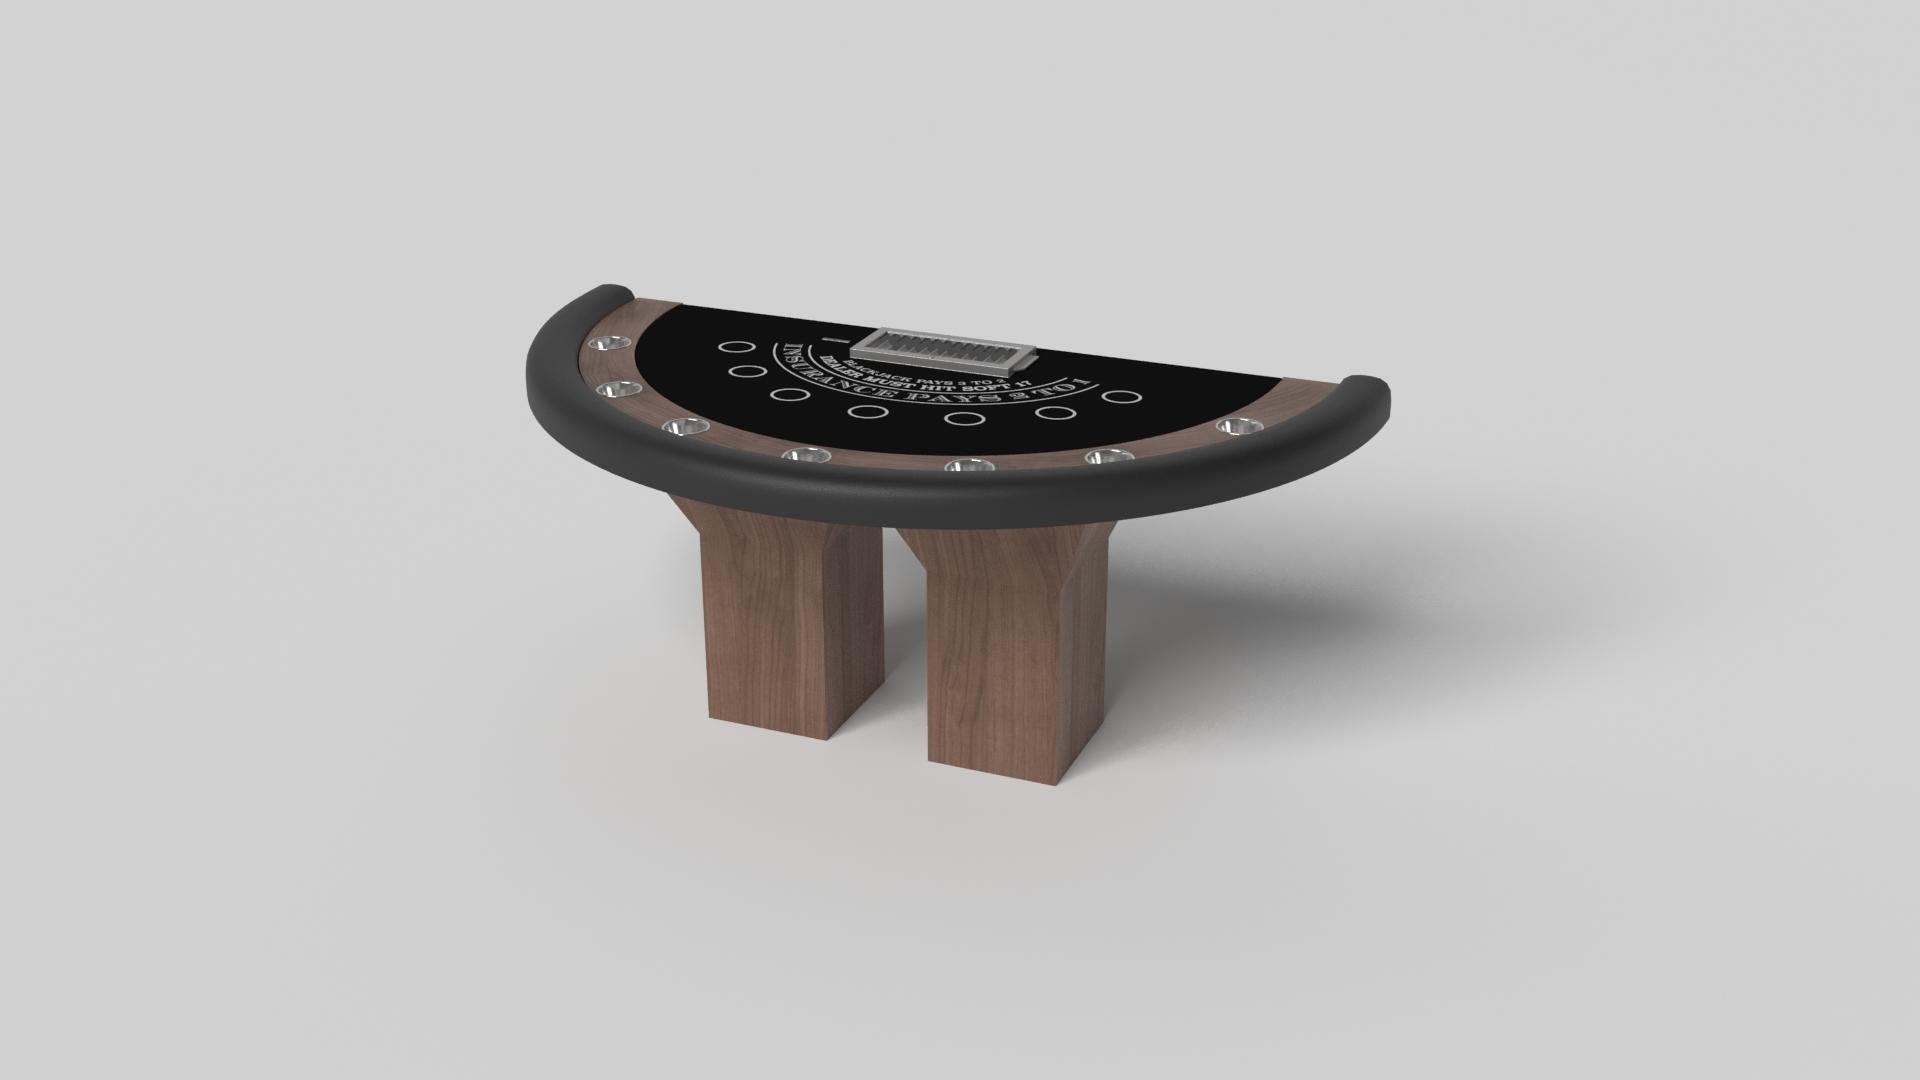 Minimalistisches Design trifft beim Trestle Blackjack-Tisch auf opulente Eleganz. Dieser moderne Tisch ist mit einer professionellen Oberfläche für endloses Spiel ausgestattet und wurde fachmännisch hergestellt. Die quadratischen Blockbeine